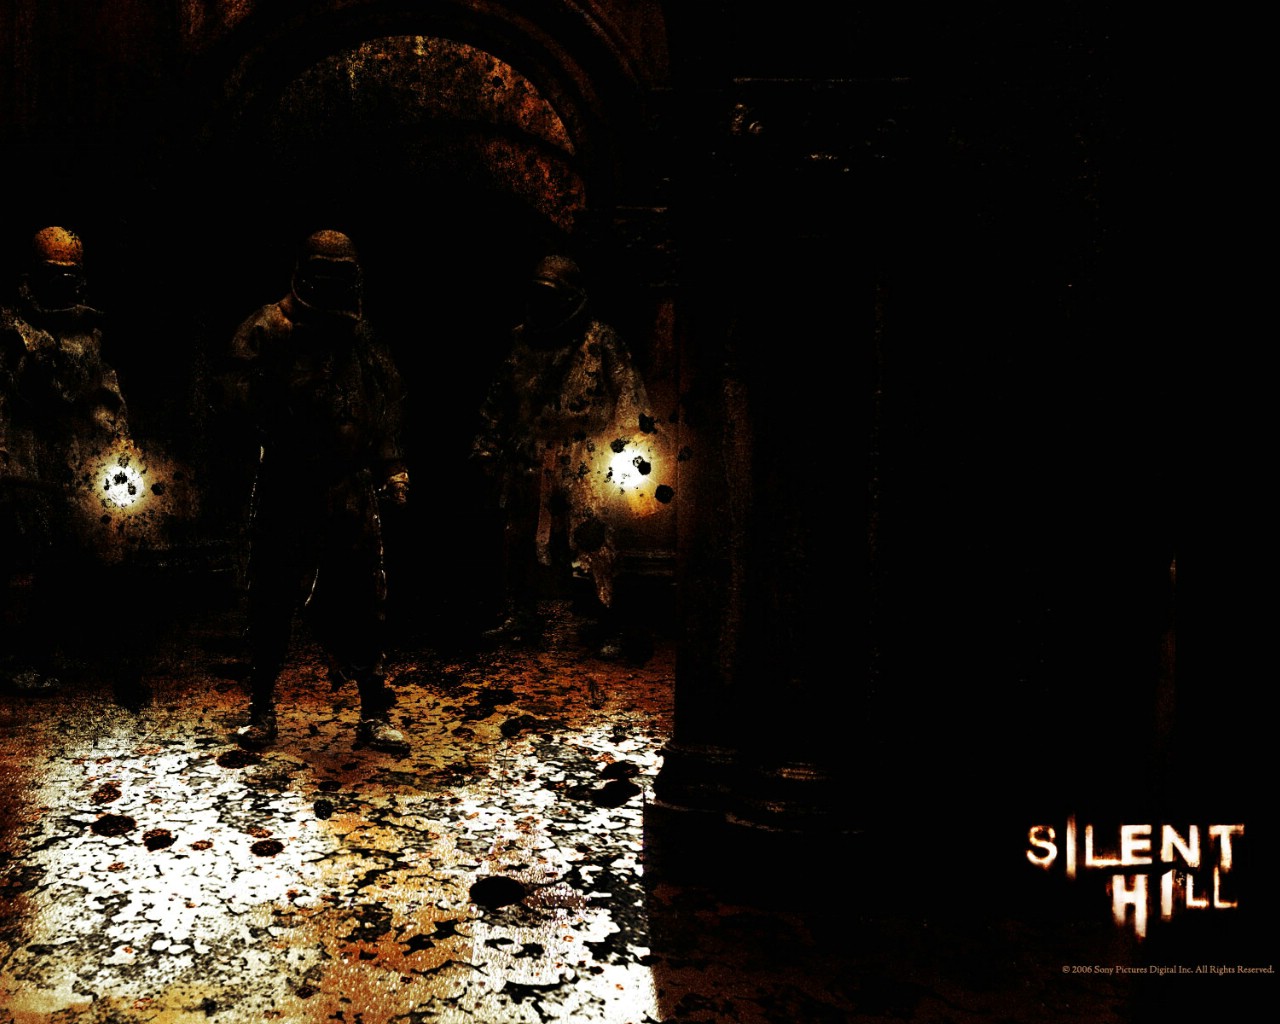 壁纸1280x1024 Movie wallpaper Silent Hill 2006 寂静岭 电影壁纸壁纸 恐怖电影《寂静岭 Silent Hill》壁纸 恐怖电影《寂静岭 Silent Hill》图片 恐怖电影《寂静岭 Silent Hill》素材 影视壁纸 影视图库 影视图片素材桌面壁纸